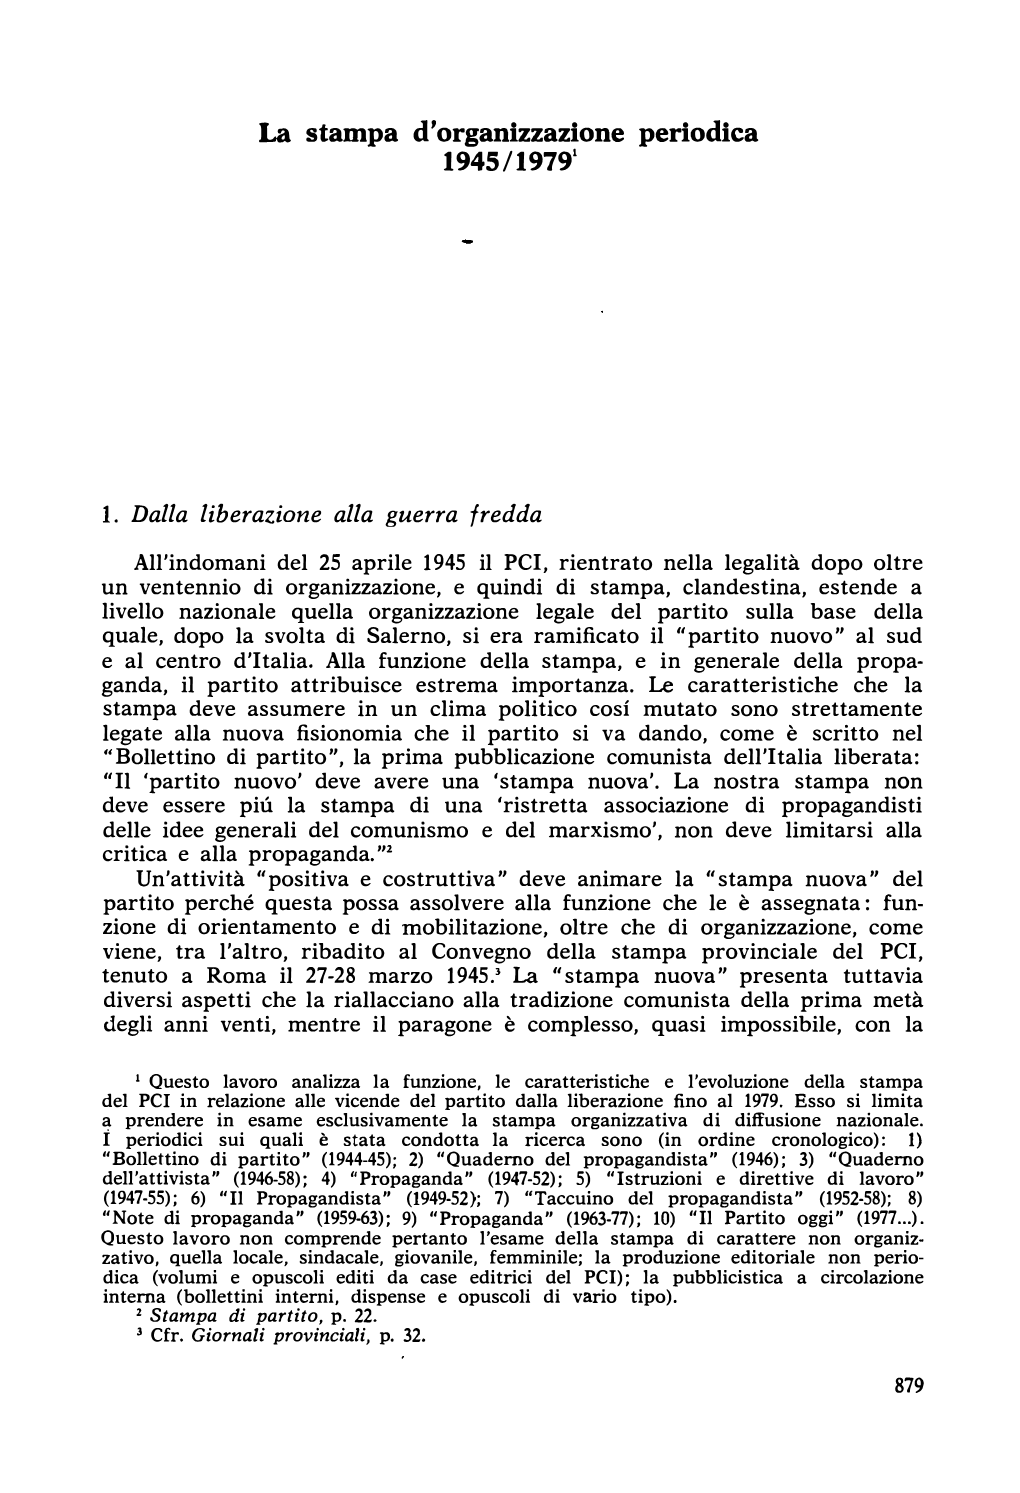 La Stampa D'organizzazione Periodica 1945/19791